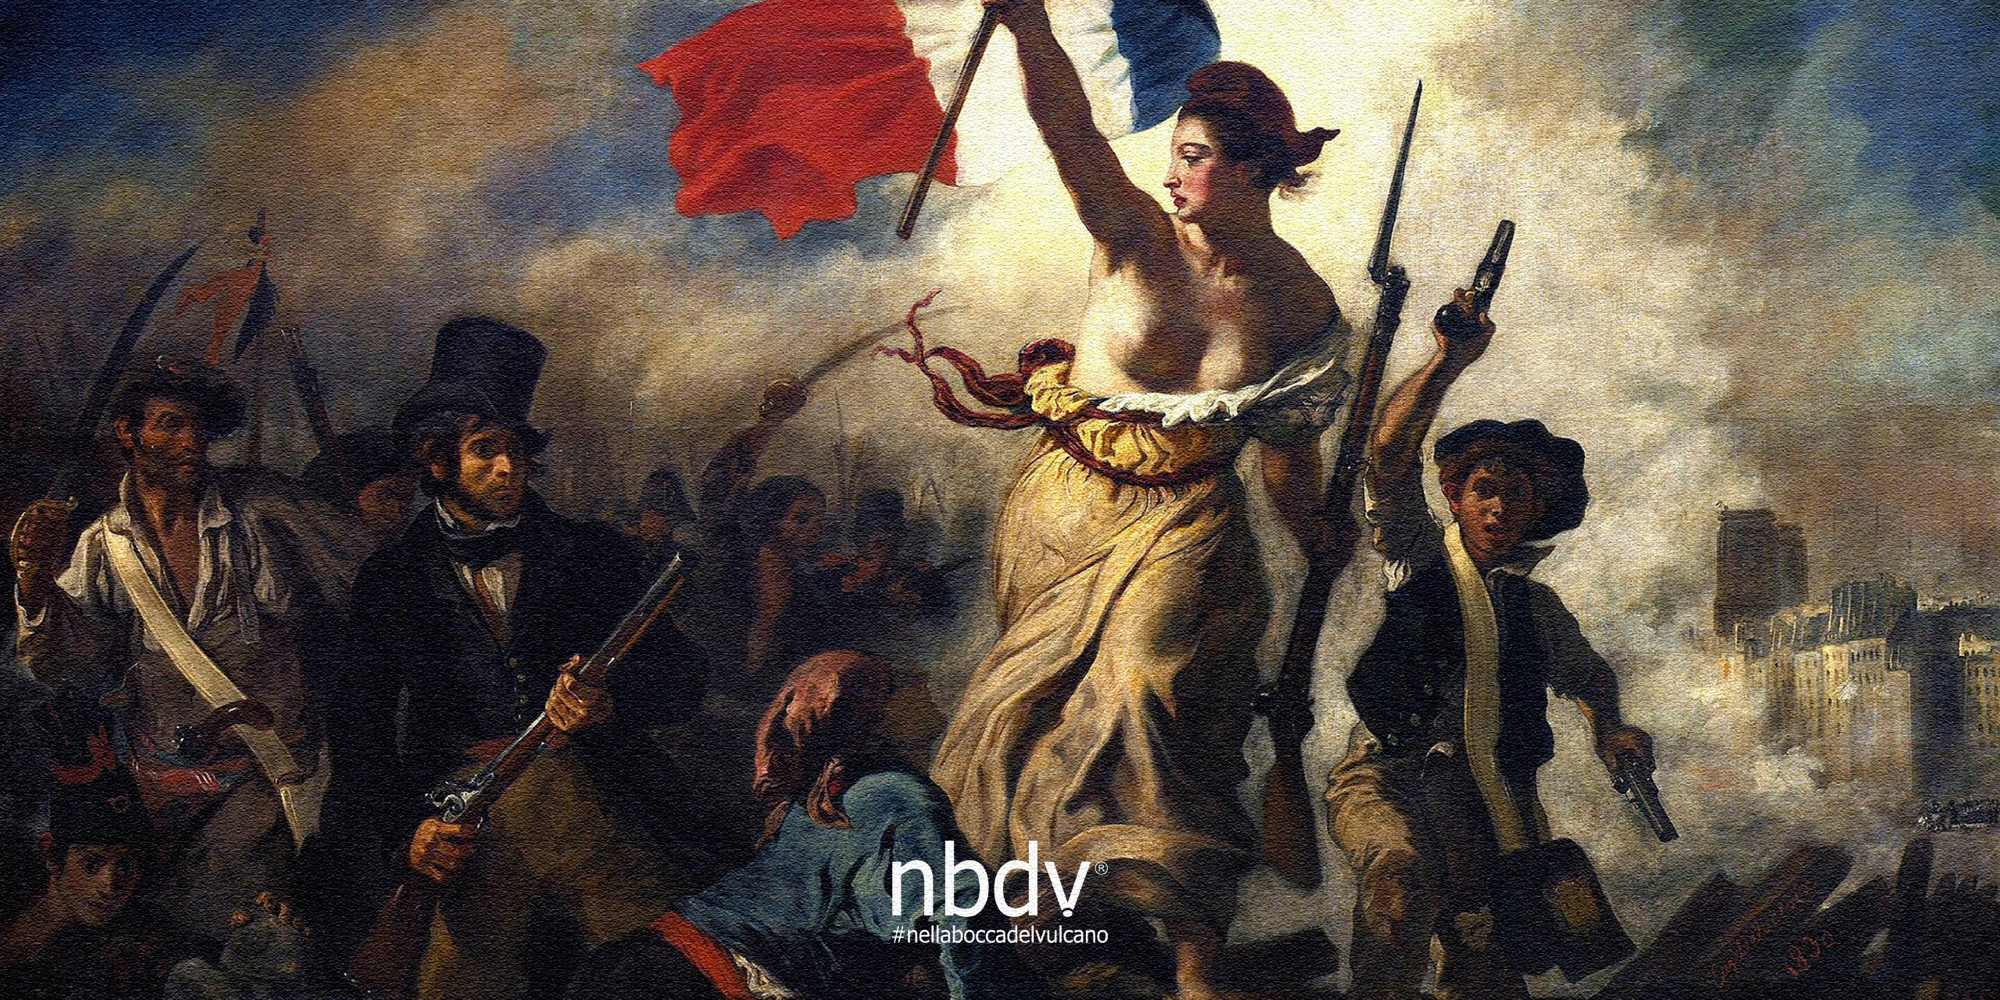 rivoluzione-francese-liberta-guida-popolo